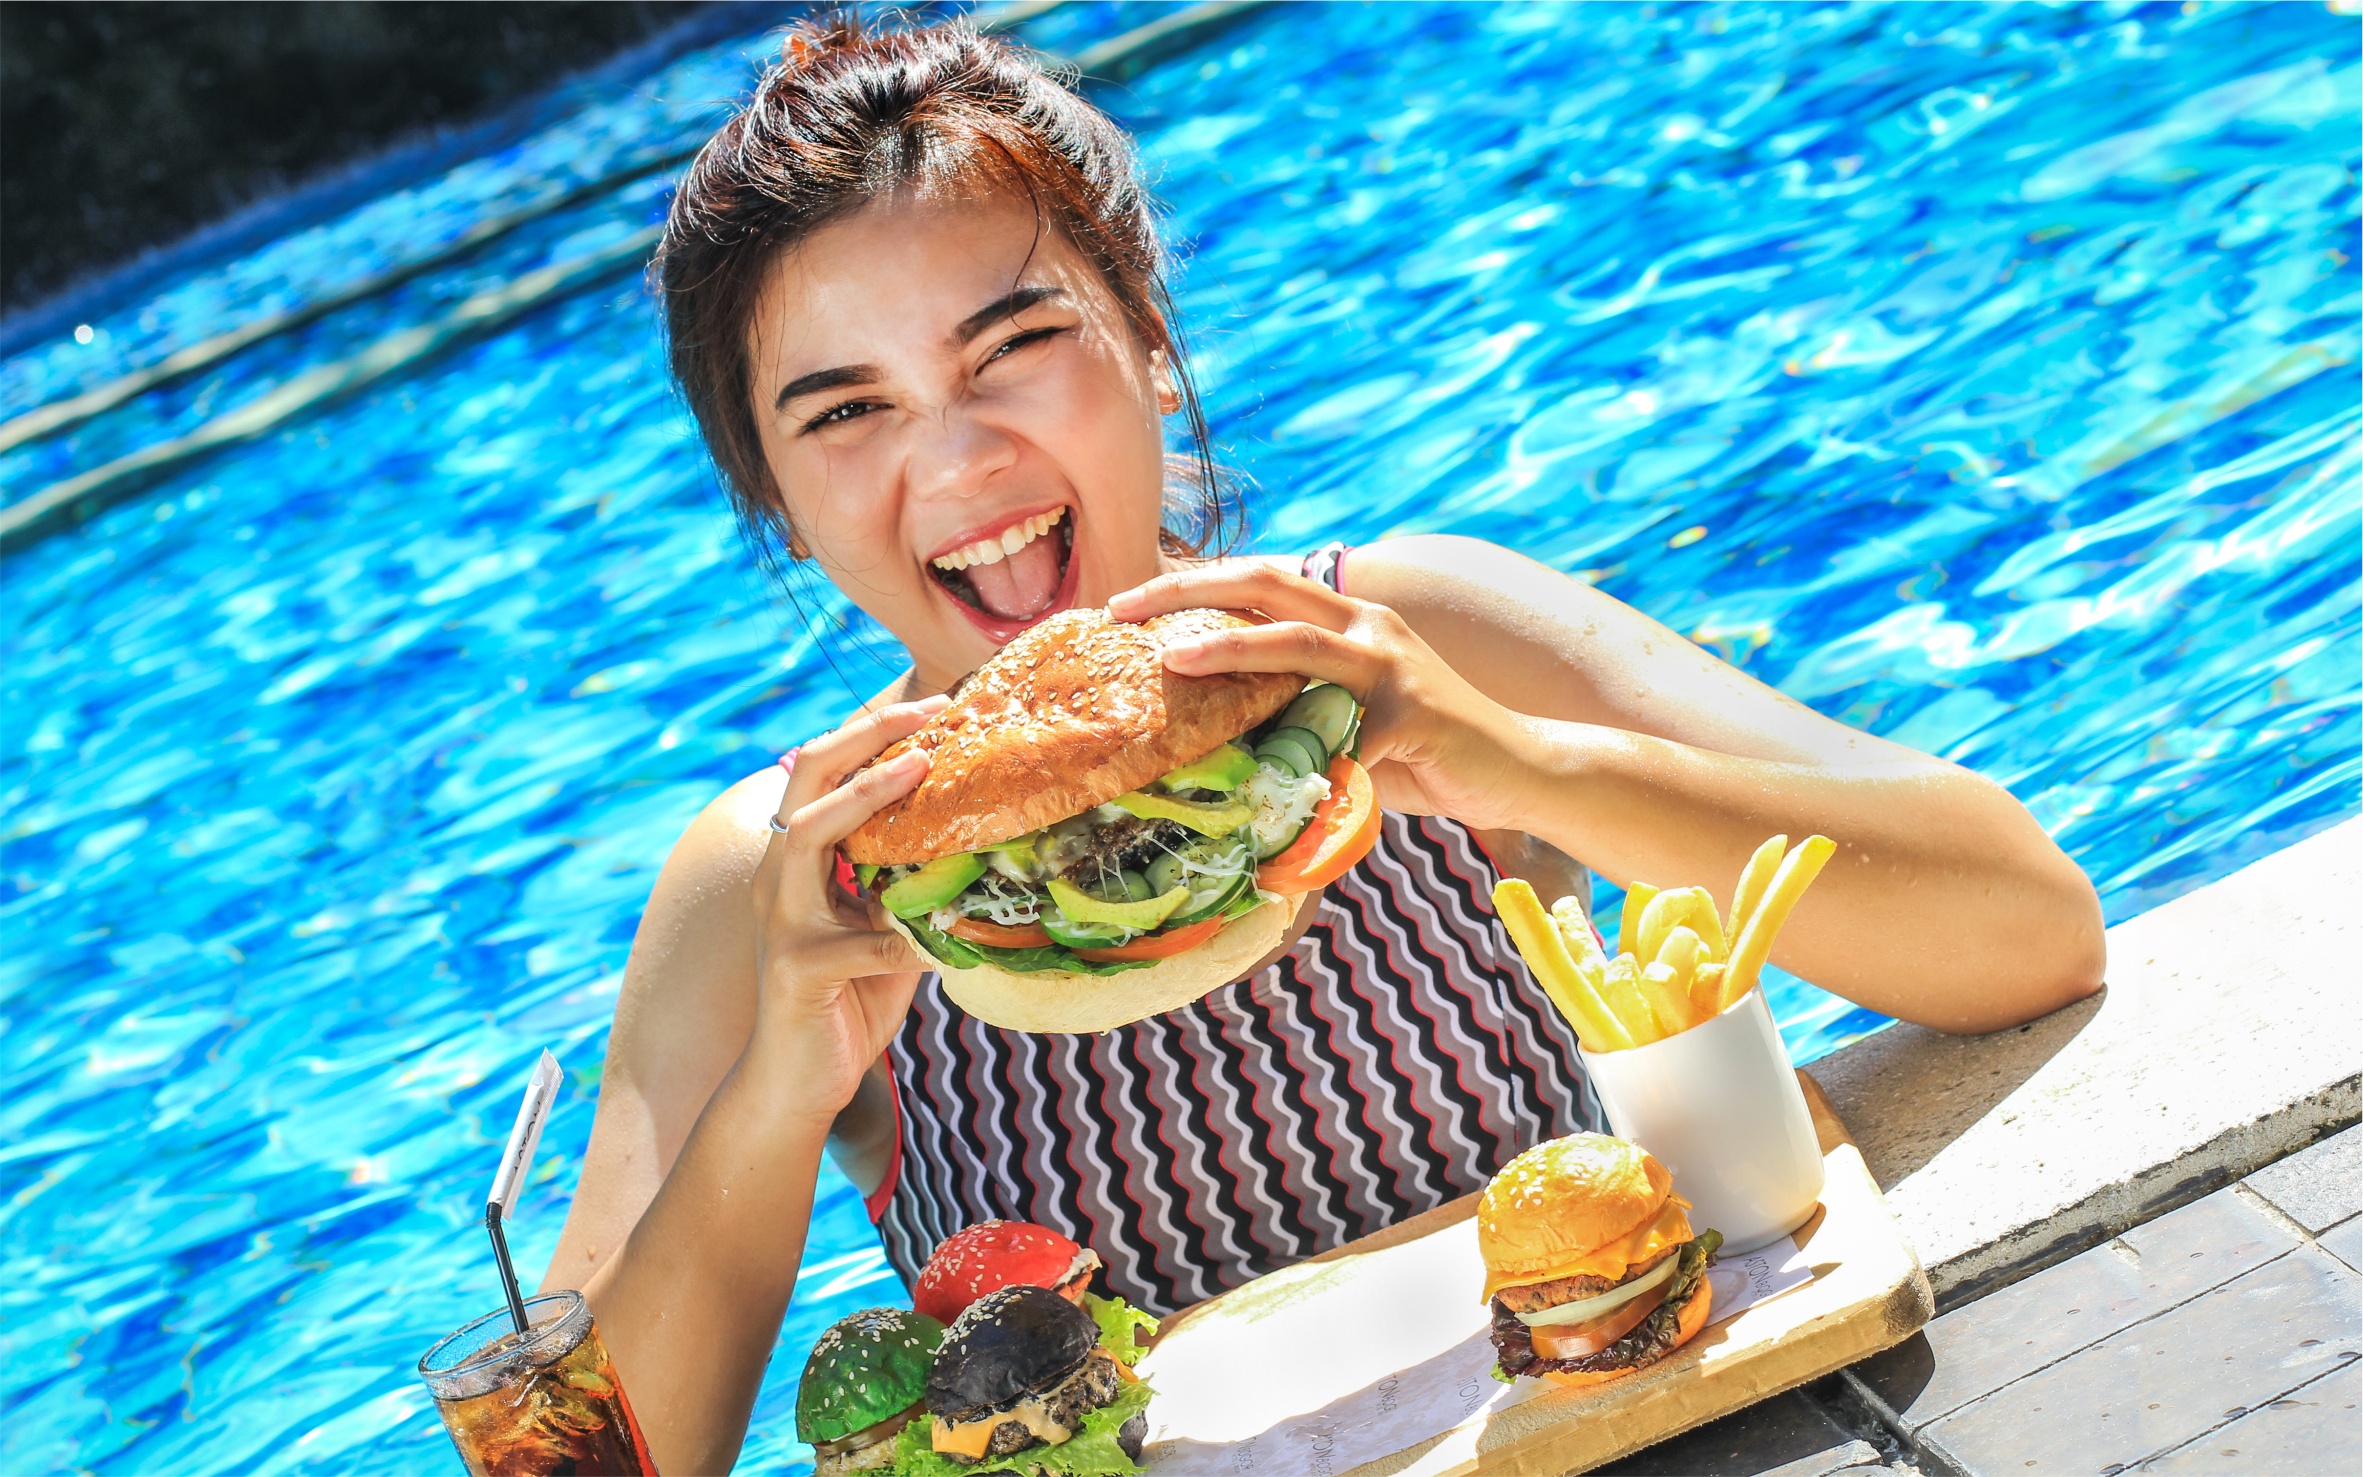 Yuk! Makan Burger Dan Berenang Sepuasnya Di Aston Bogor Hotel & Resort/istimewa